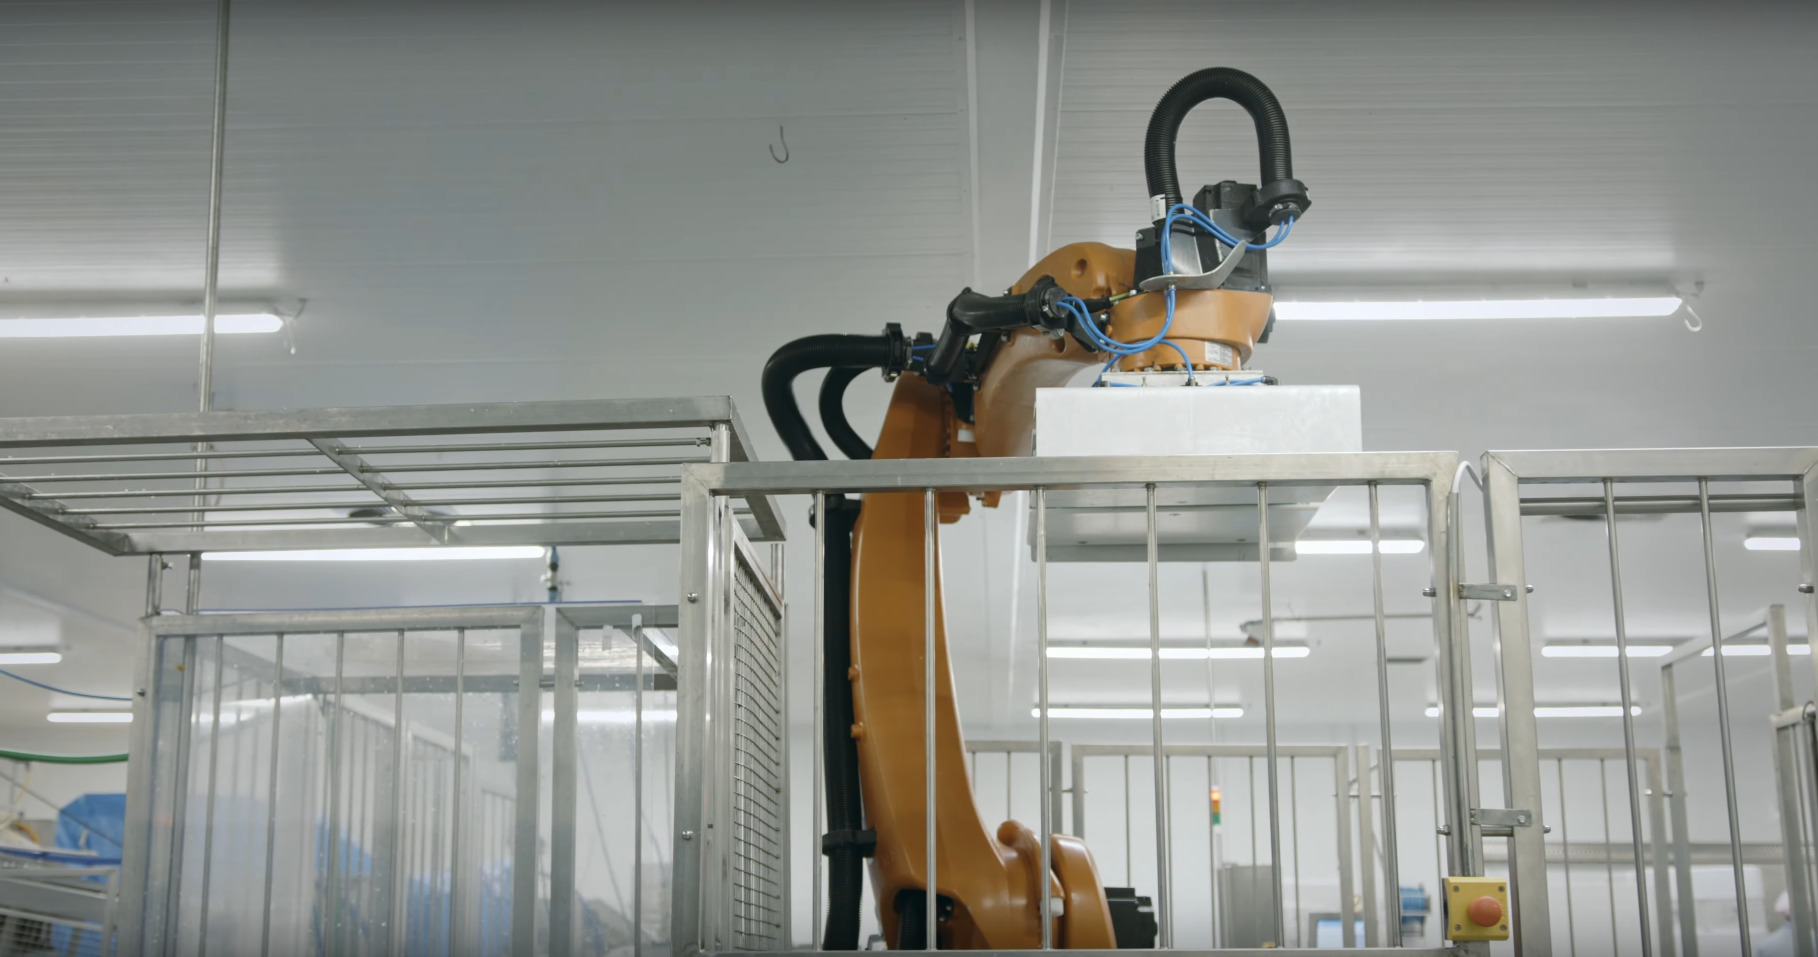 Koło Darłowa robot każdego dnia układa na paletach 80 ton towaru